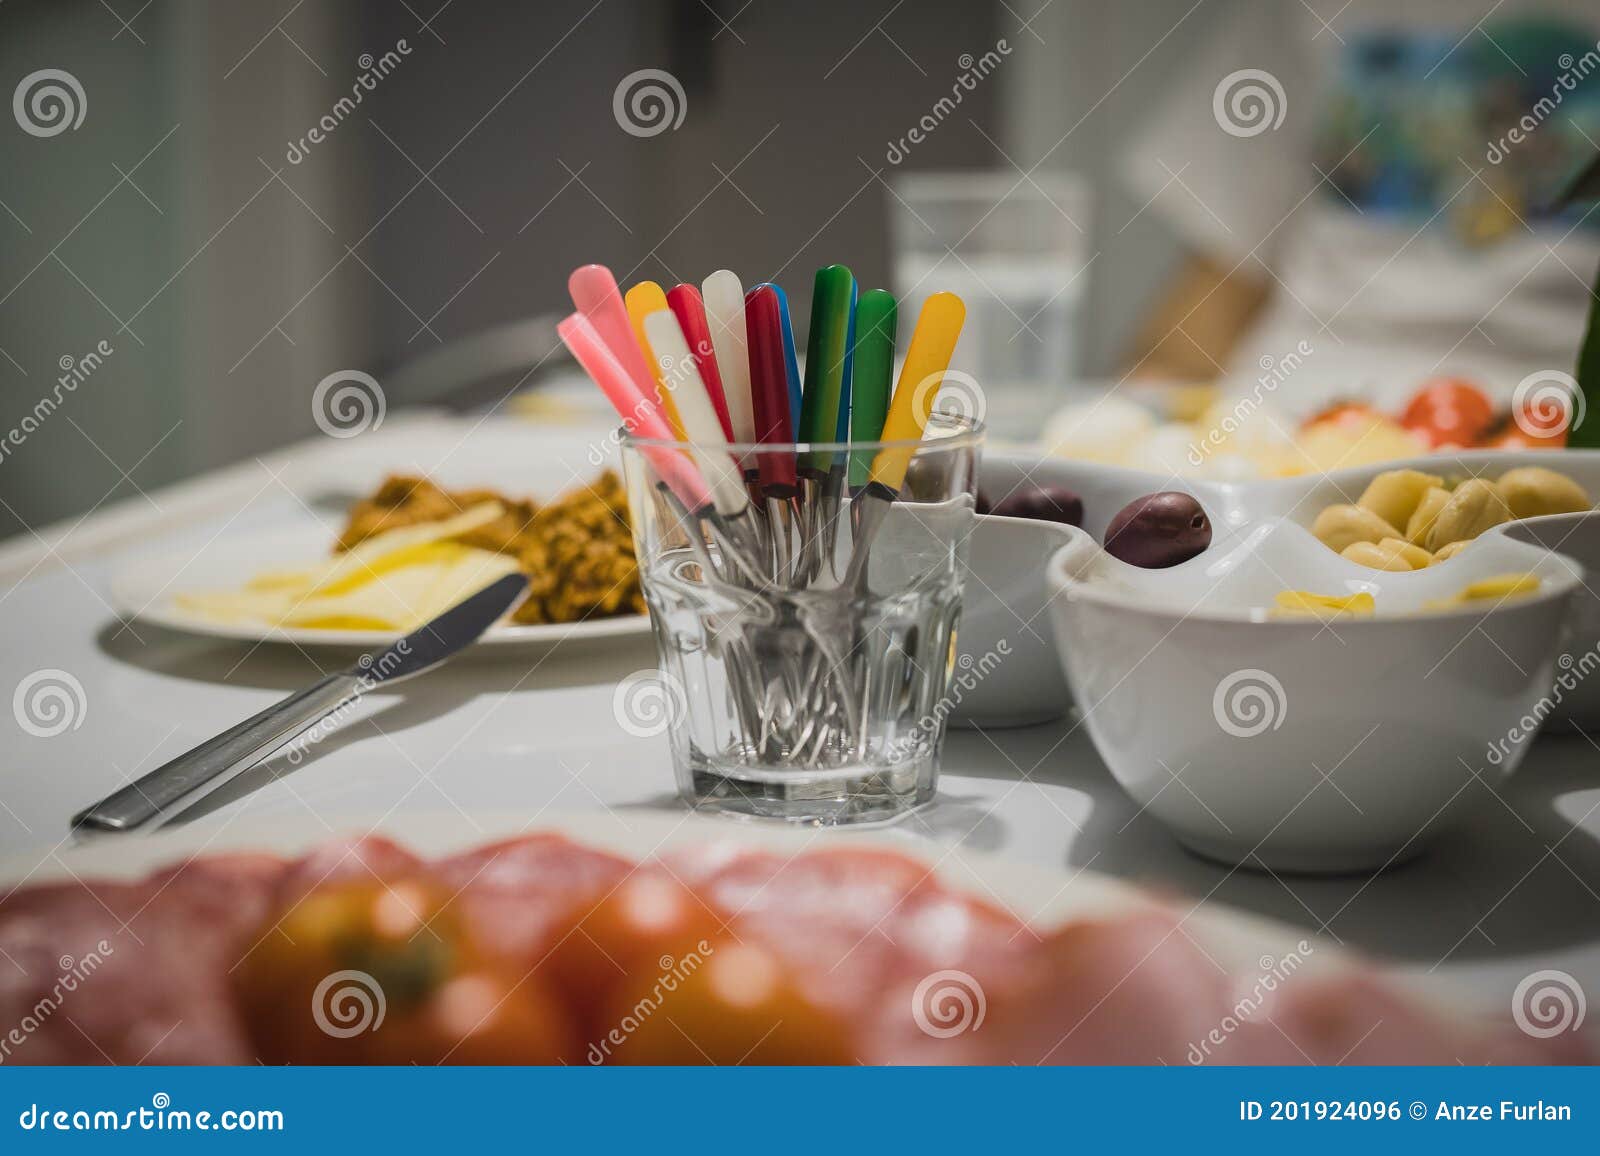 Petites Fourchettes Colorées De Pique-nique Ou Partie Prêtes à